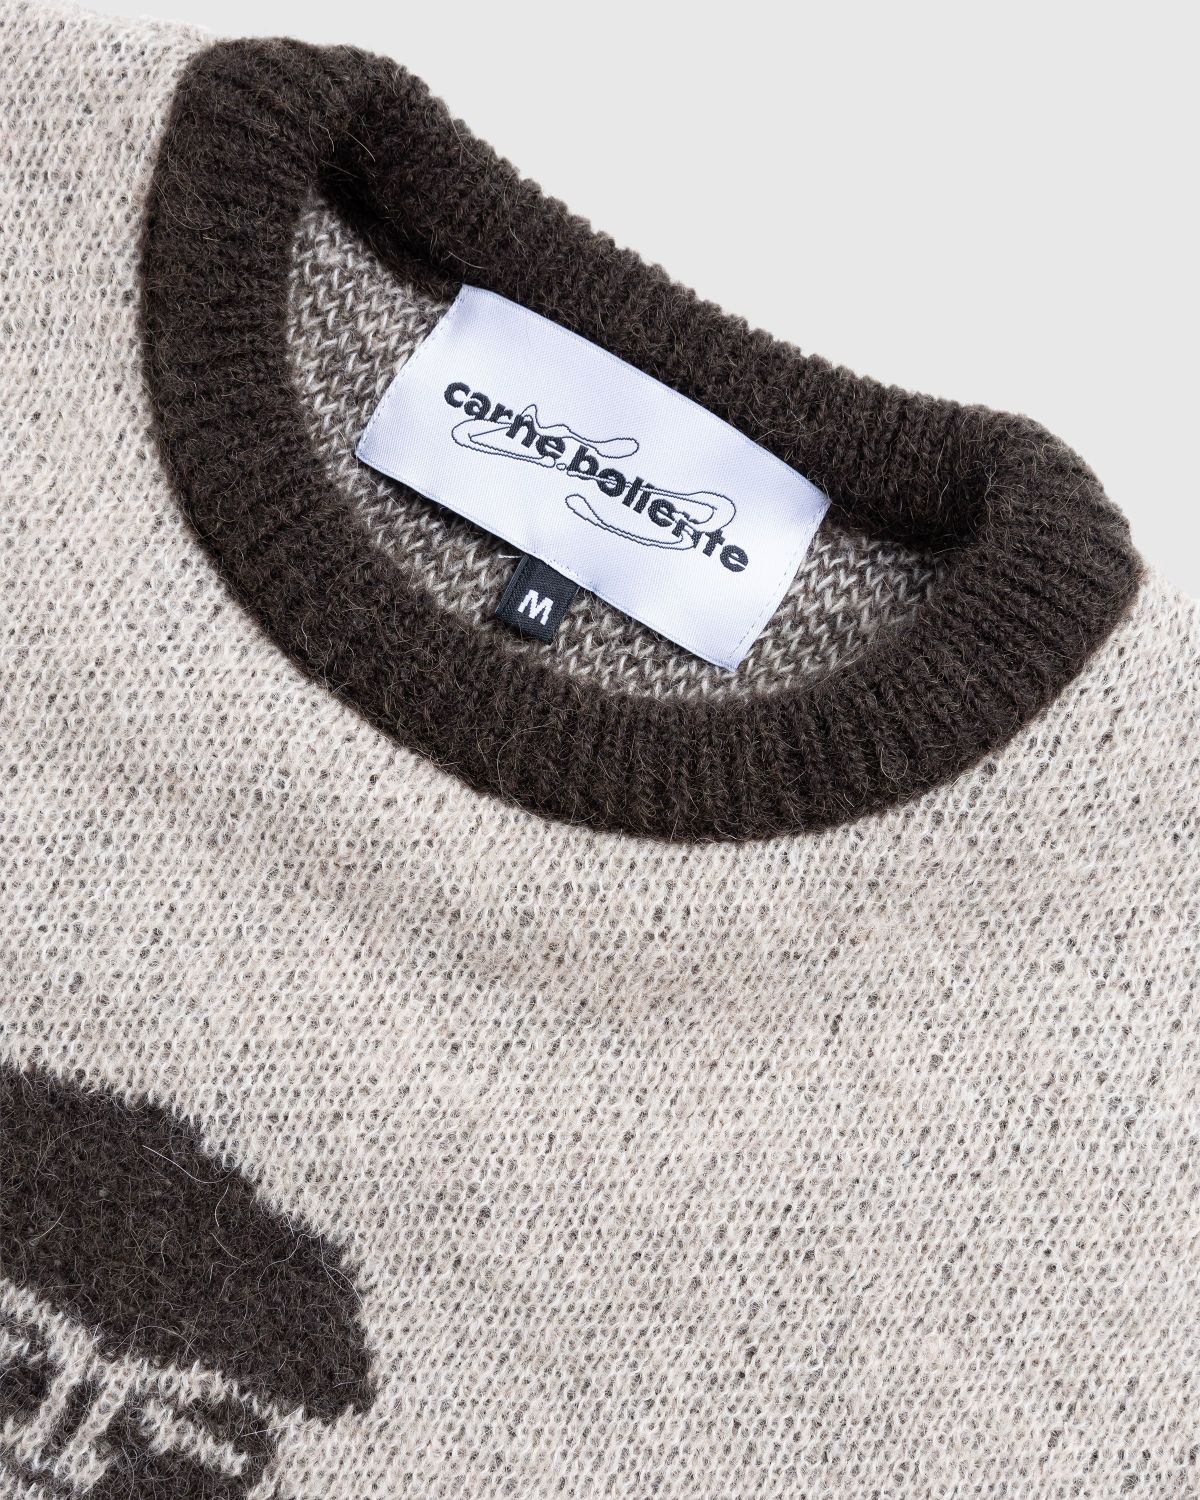 Carne Bollente – B.F.F. Sweater Beige - Knitwear - Beige - Image 2